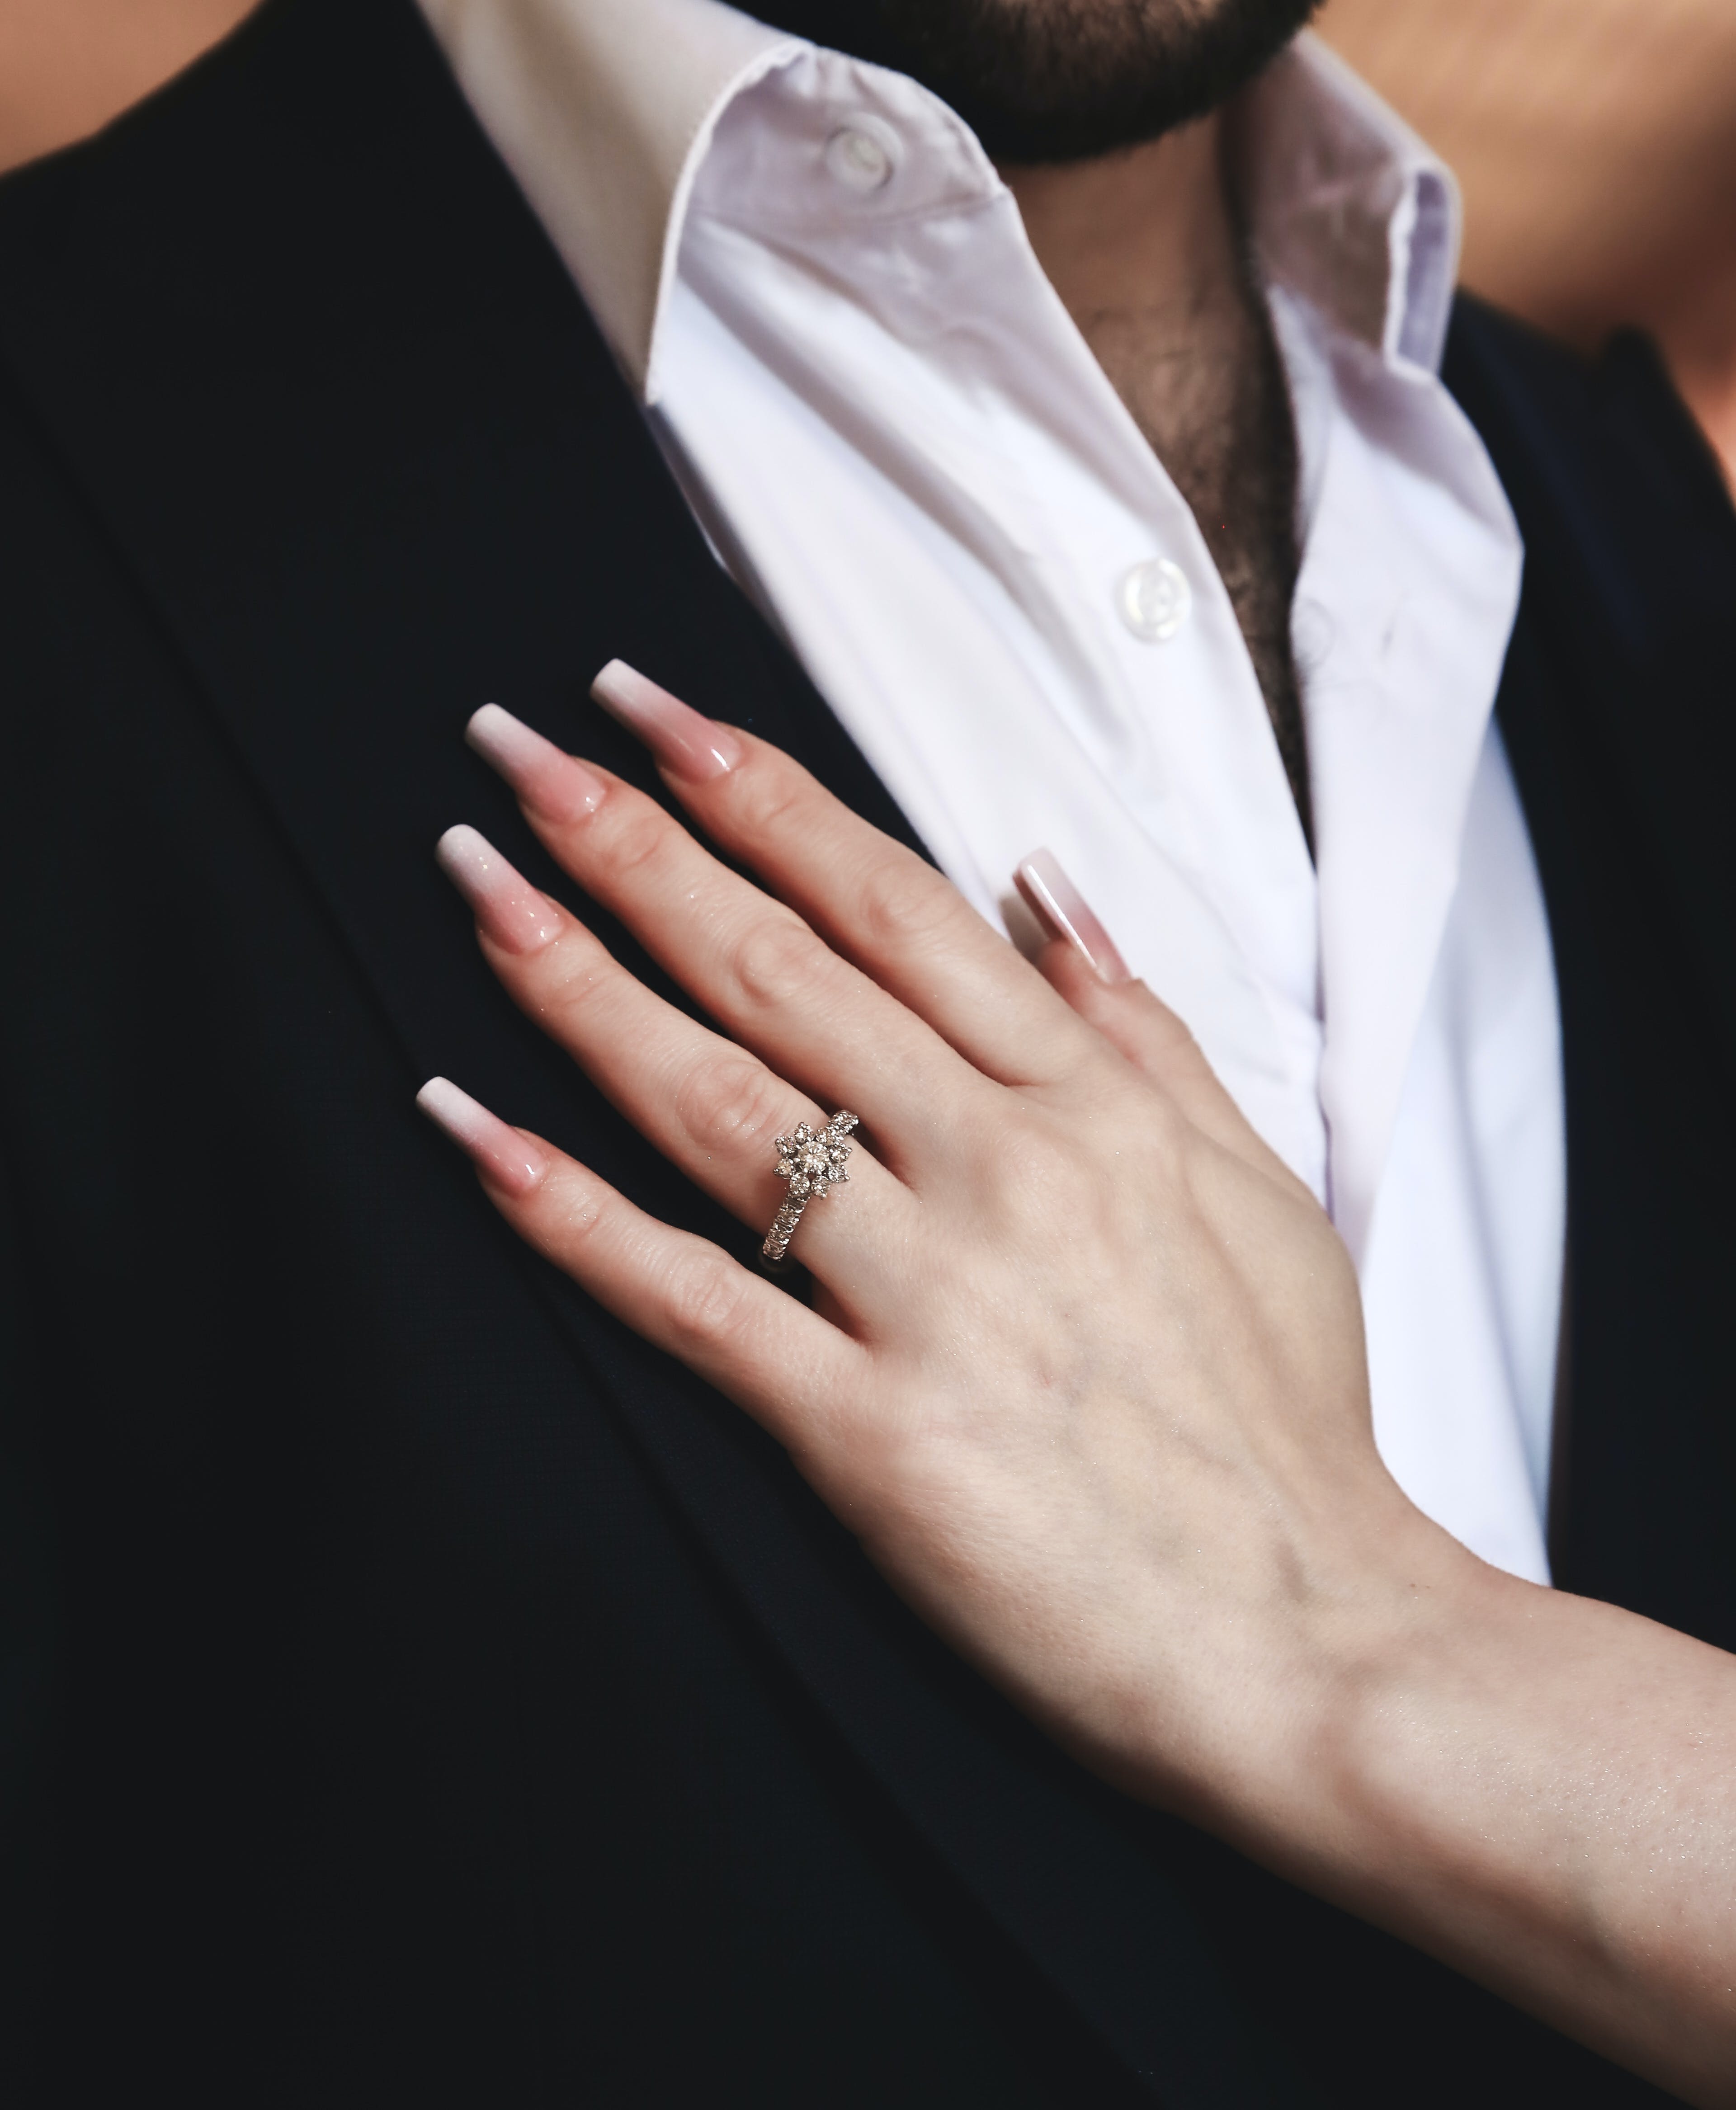 Eine Frau, die ihre Hand auf die Brust eines Mannes legt | Quelle: Pexels